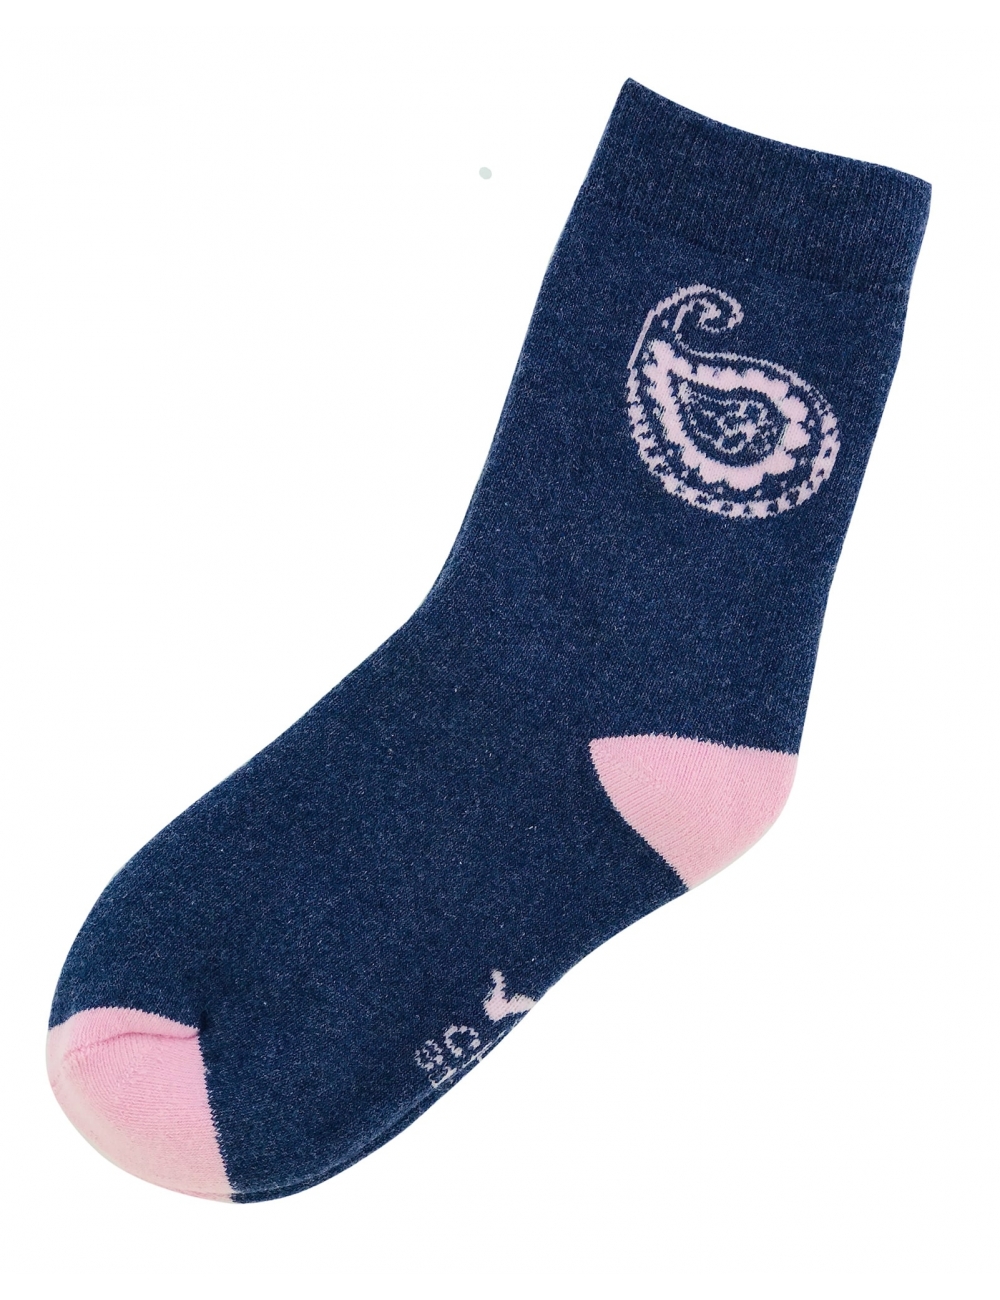 Теплые носки для девочек тм" Yo " синие с розовым